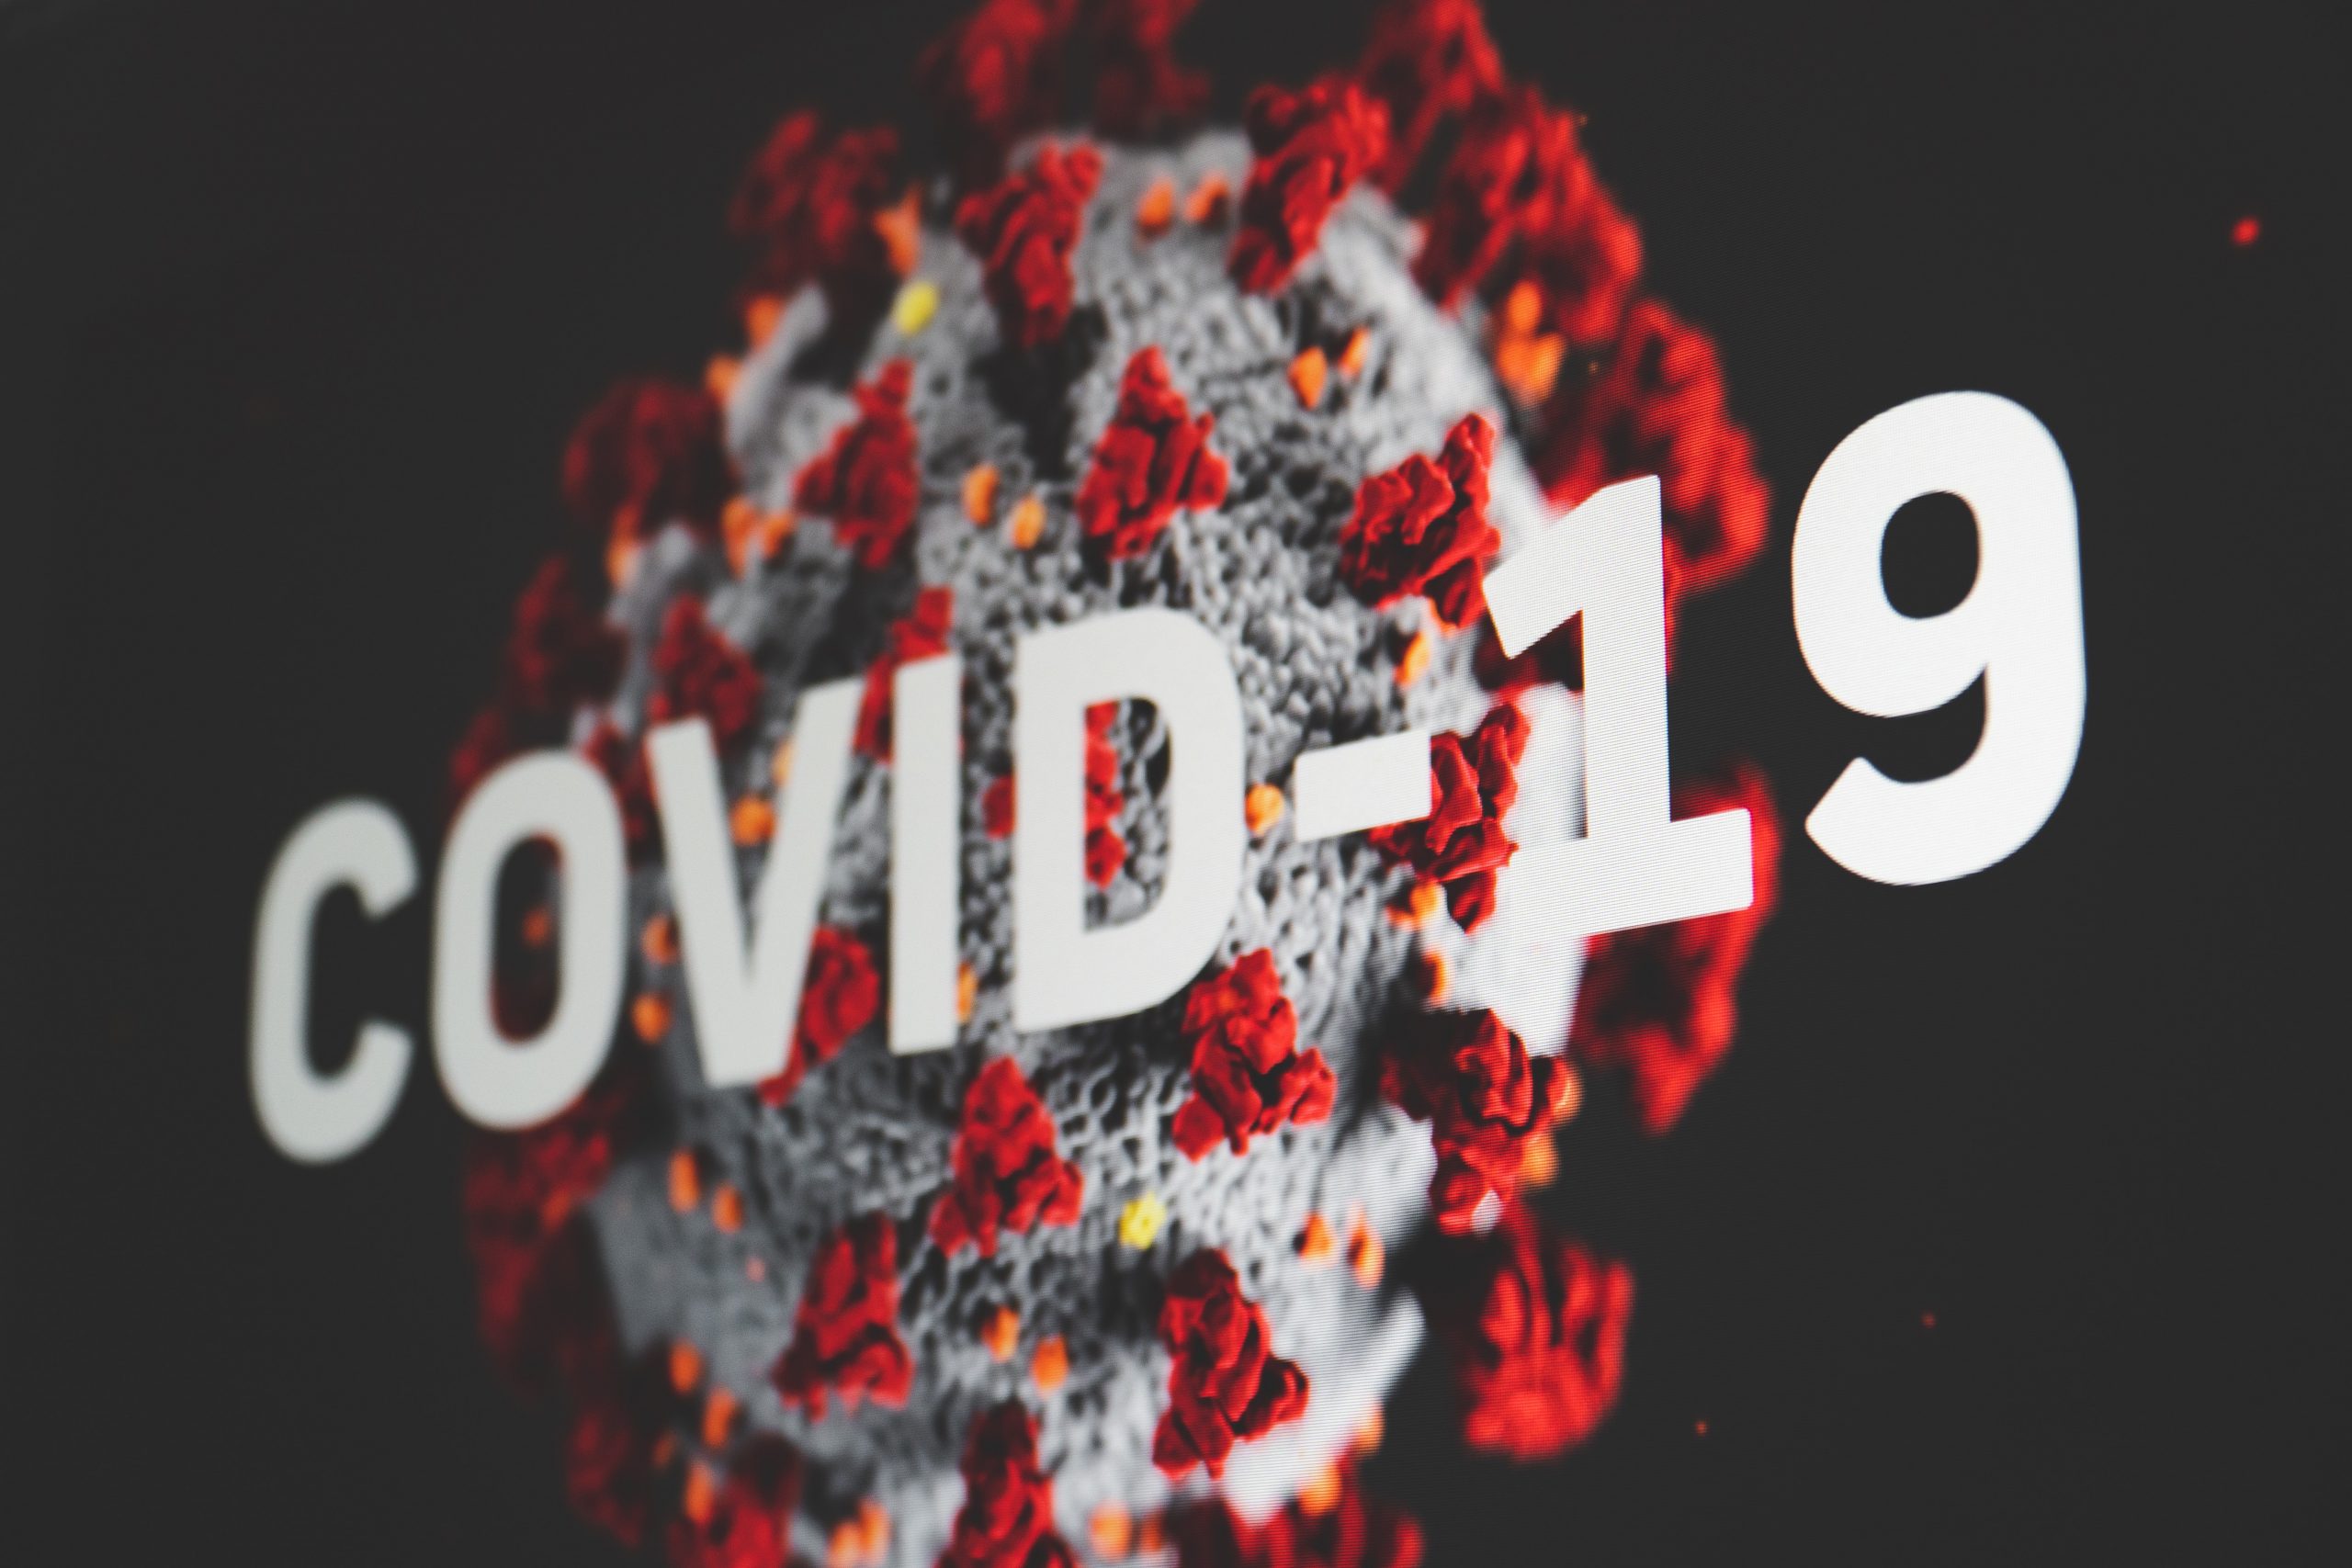 โควิด-19 ไวรัสโคโรน่า 2019